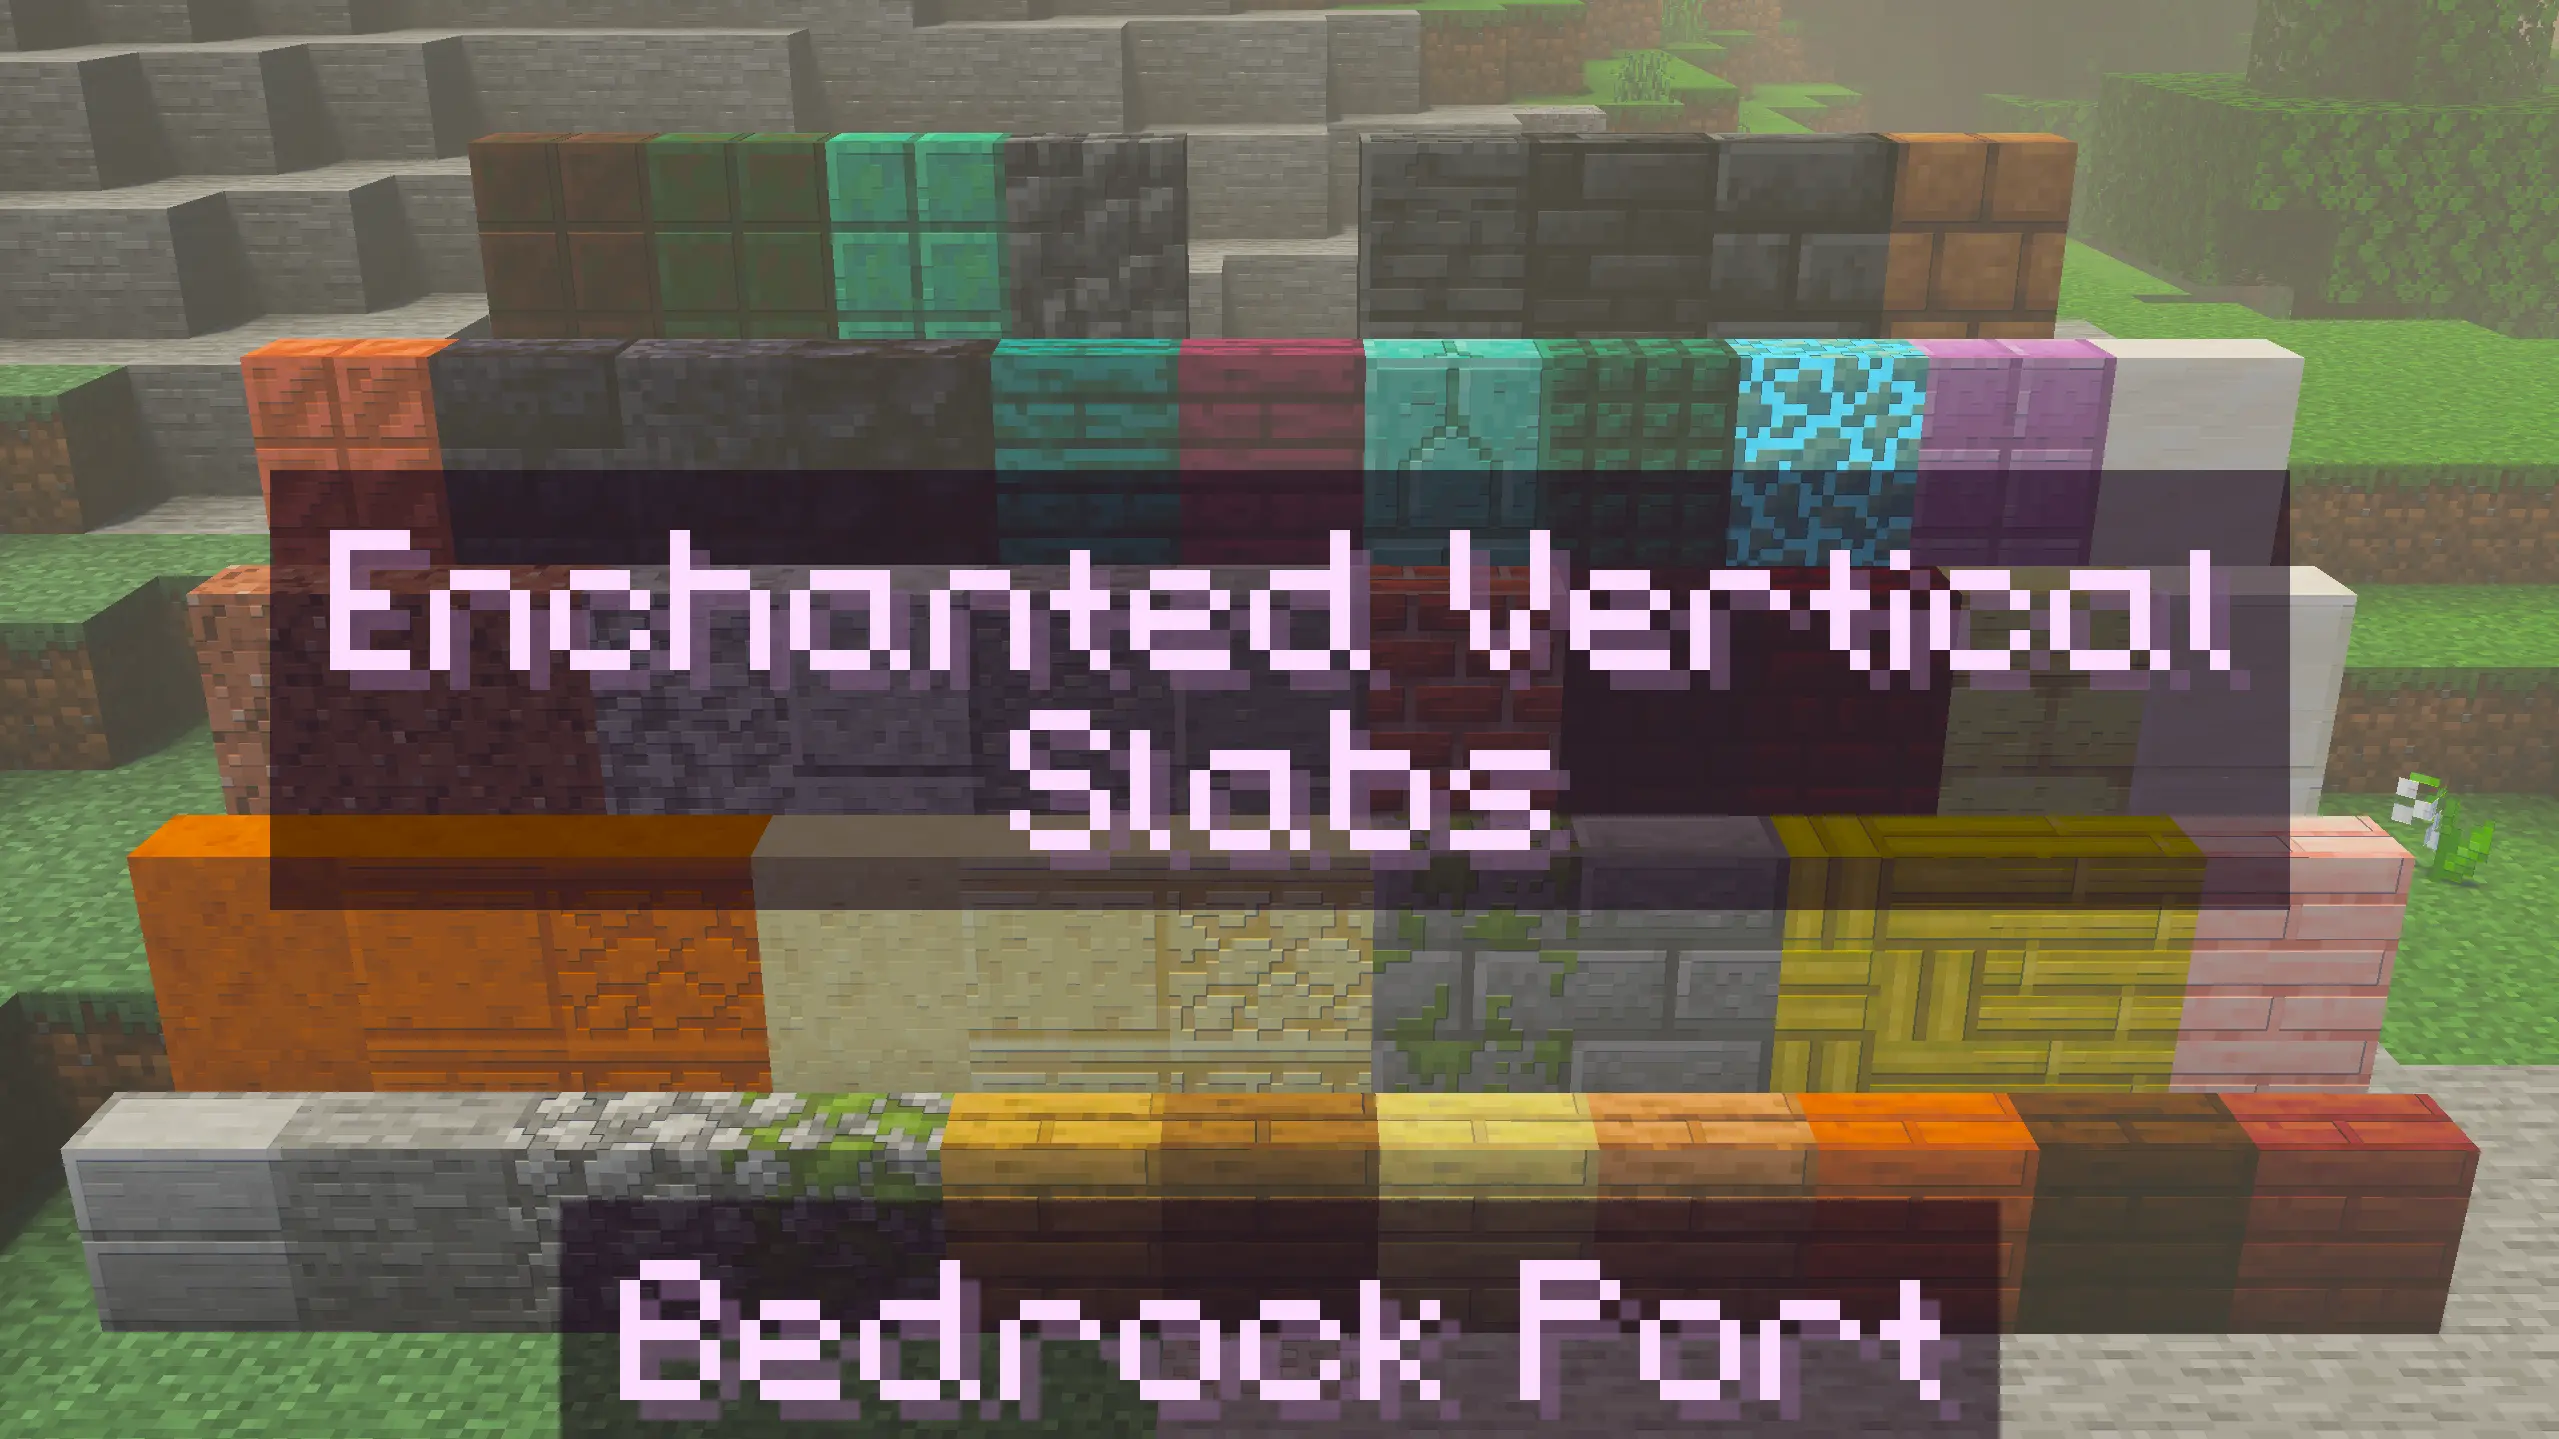 Enchanted Vertical Slabs
